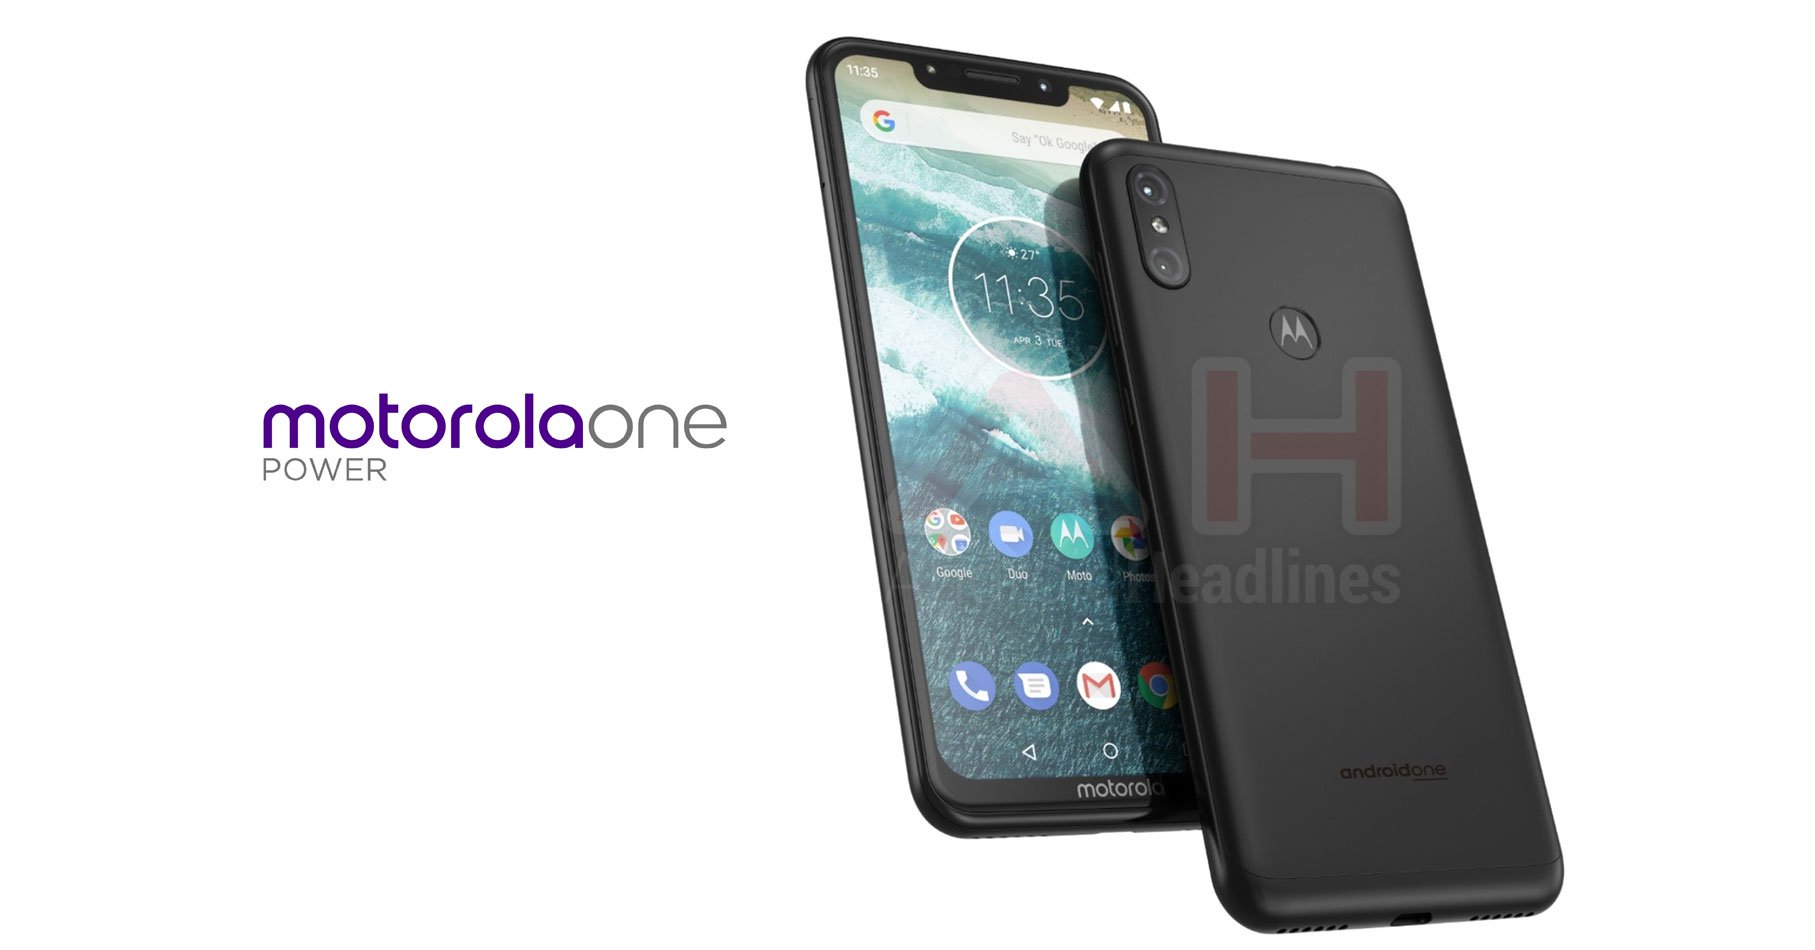 Rò rỉ cấu hình Motorola One POWER: Snap 636, RAM 4GB, tai thỏ, pin 3780mAh, camera kép